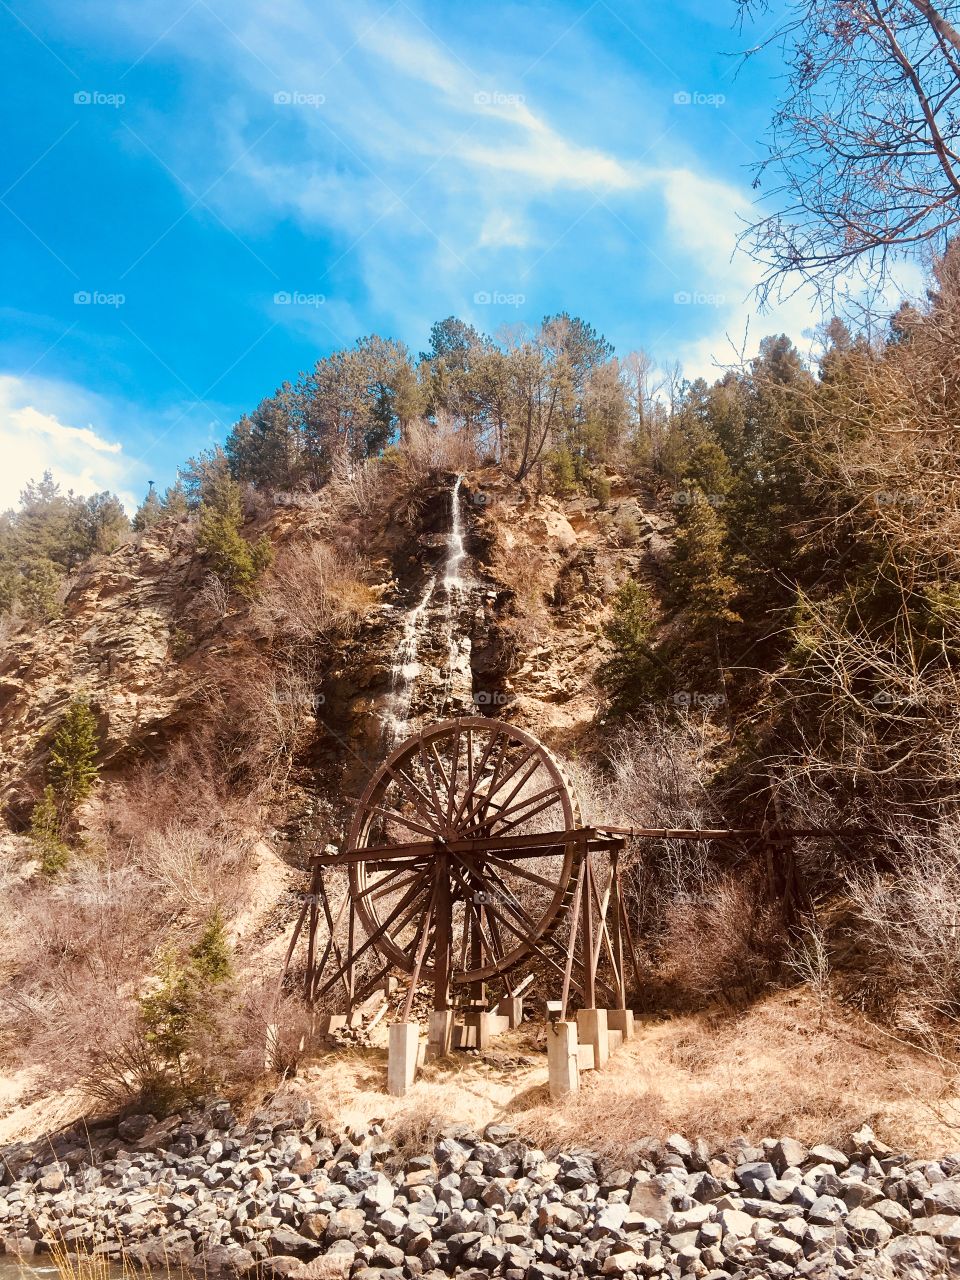 Waterwheel in Idaho Springs